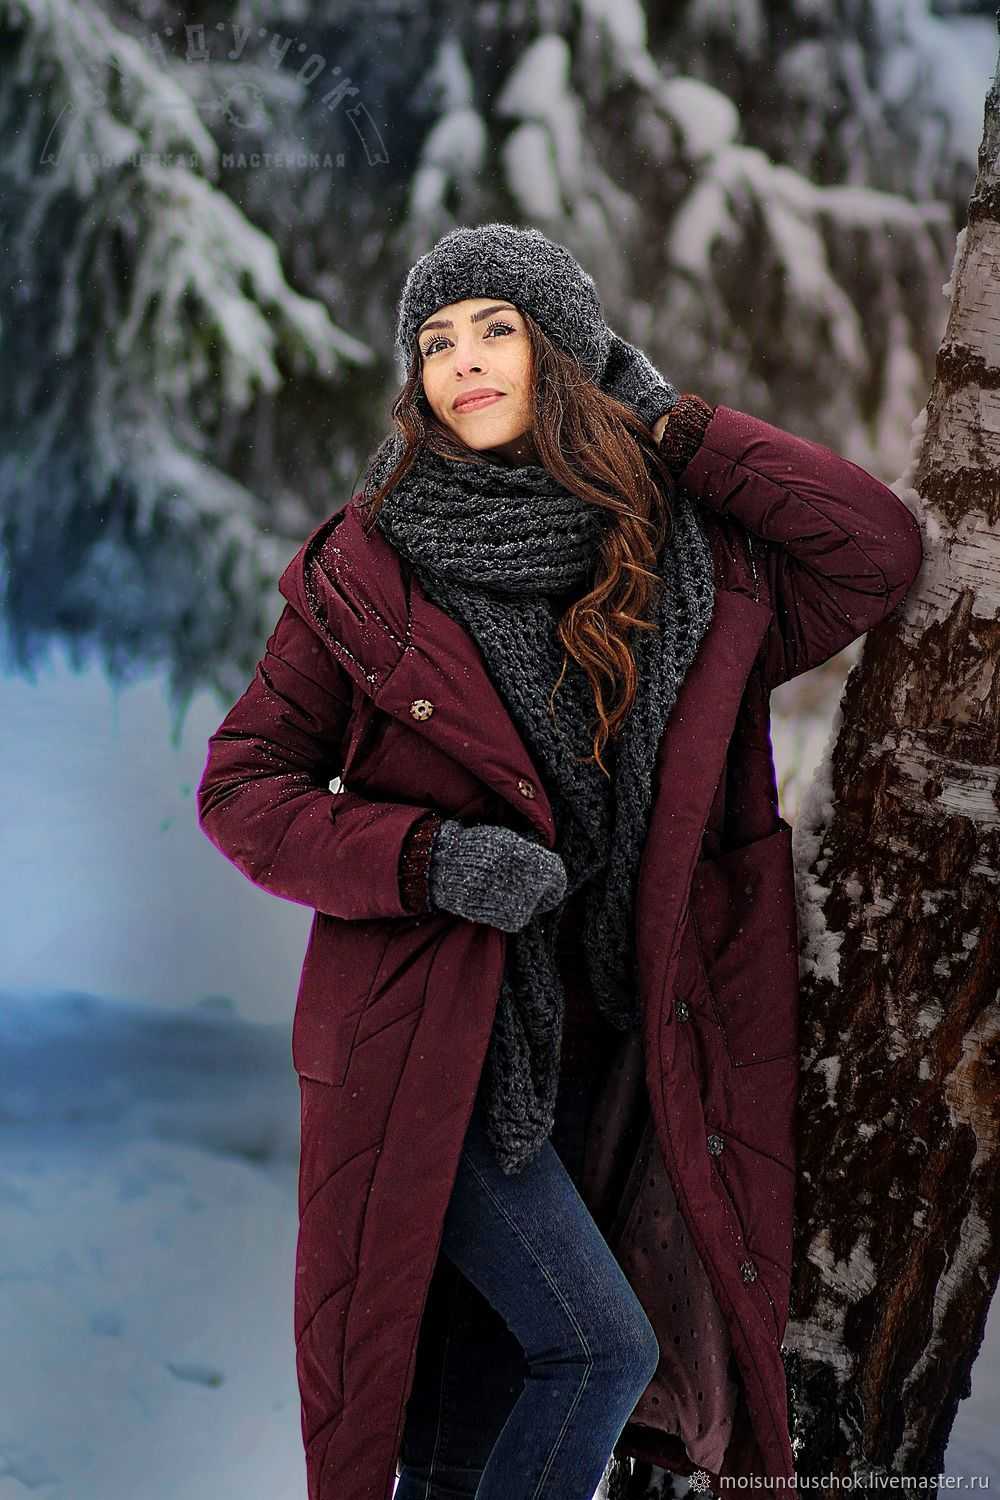 Модное сочетание шапки с пальто Полезные советы стилистов Фото стильных образов